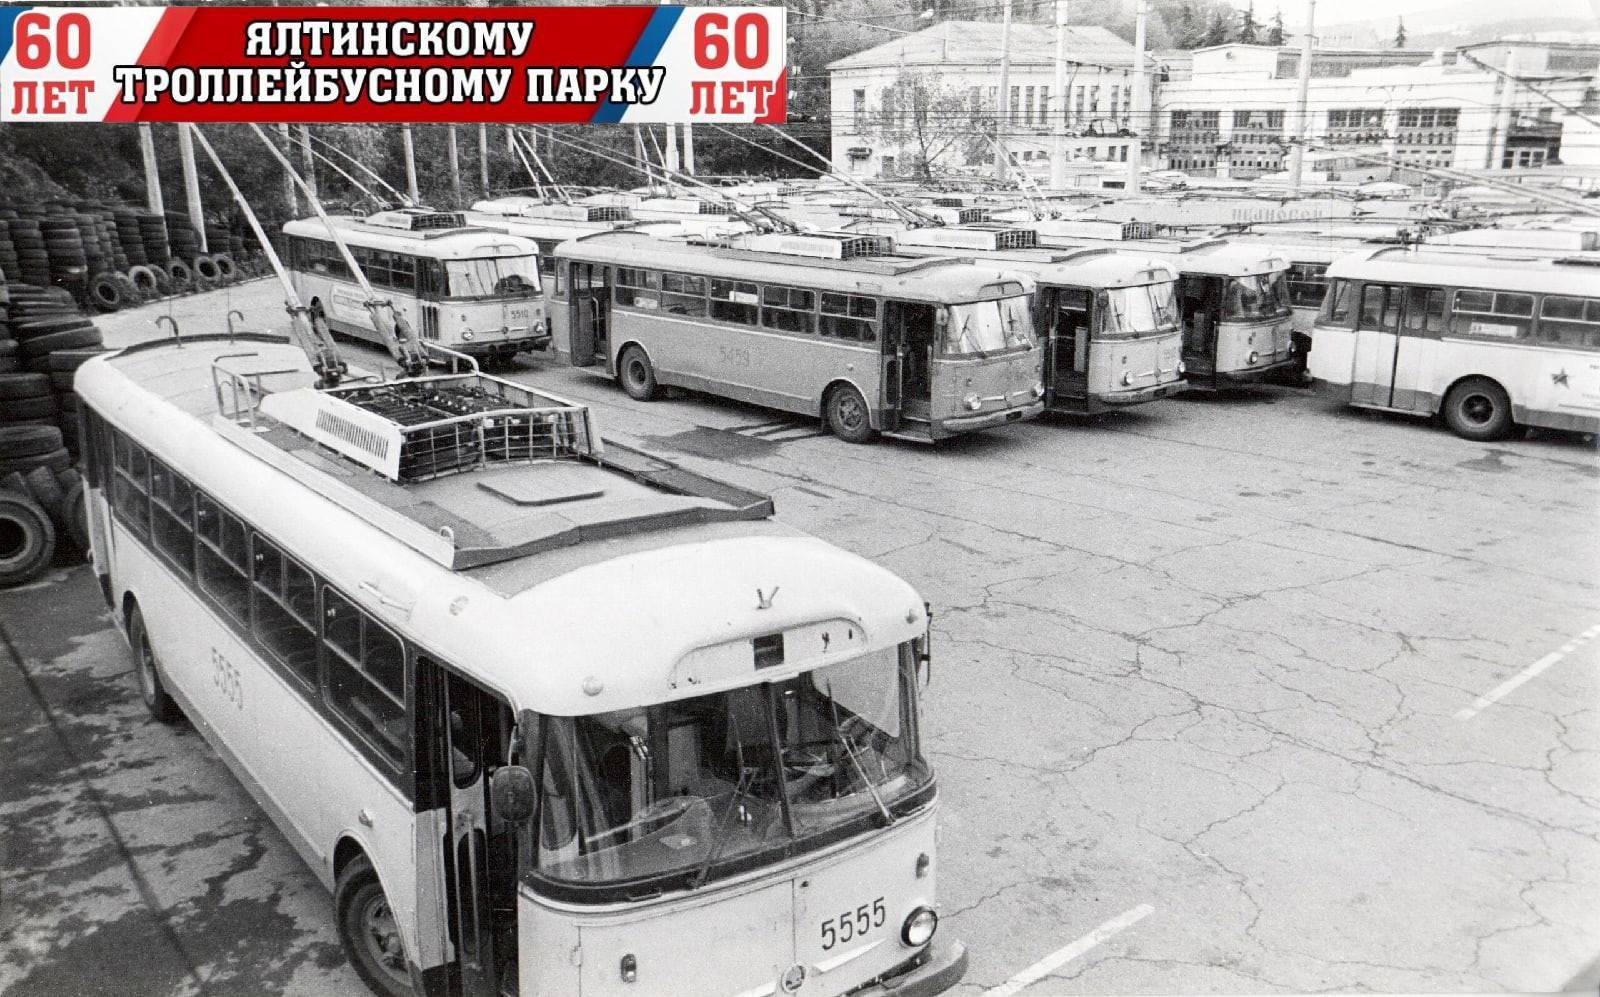 Ялтинский троллейбусный парк в Крыму